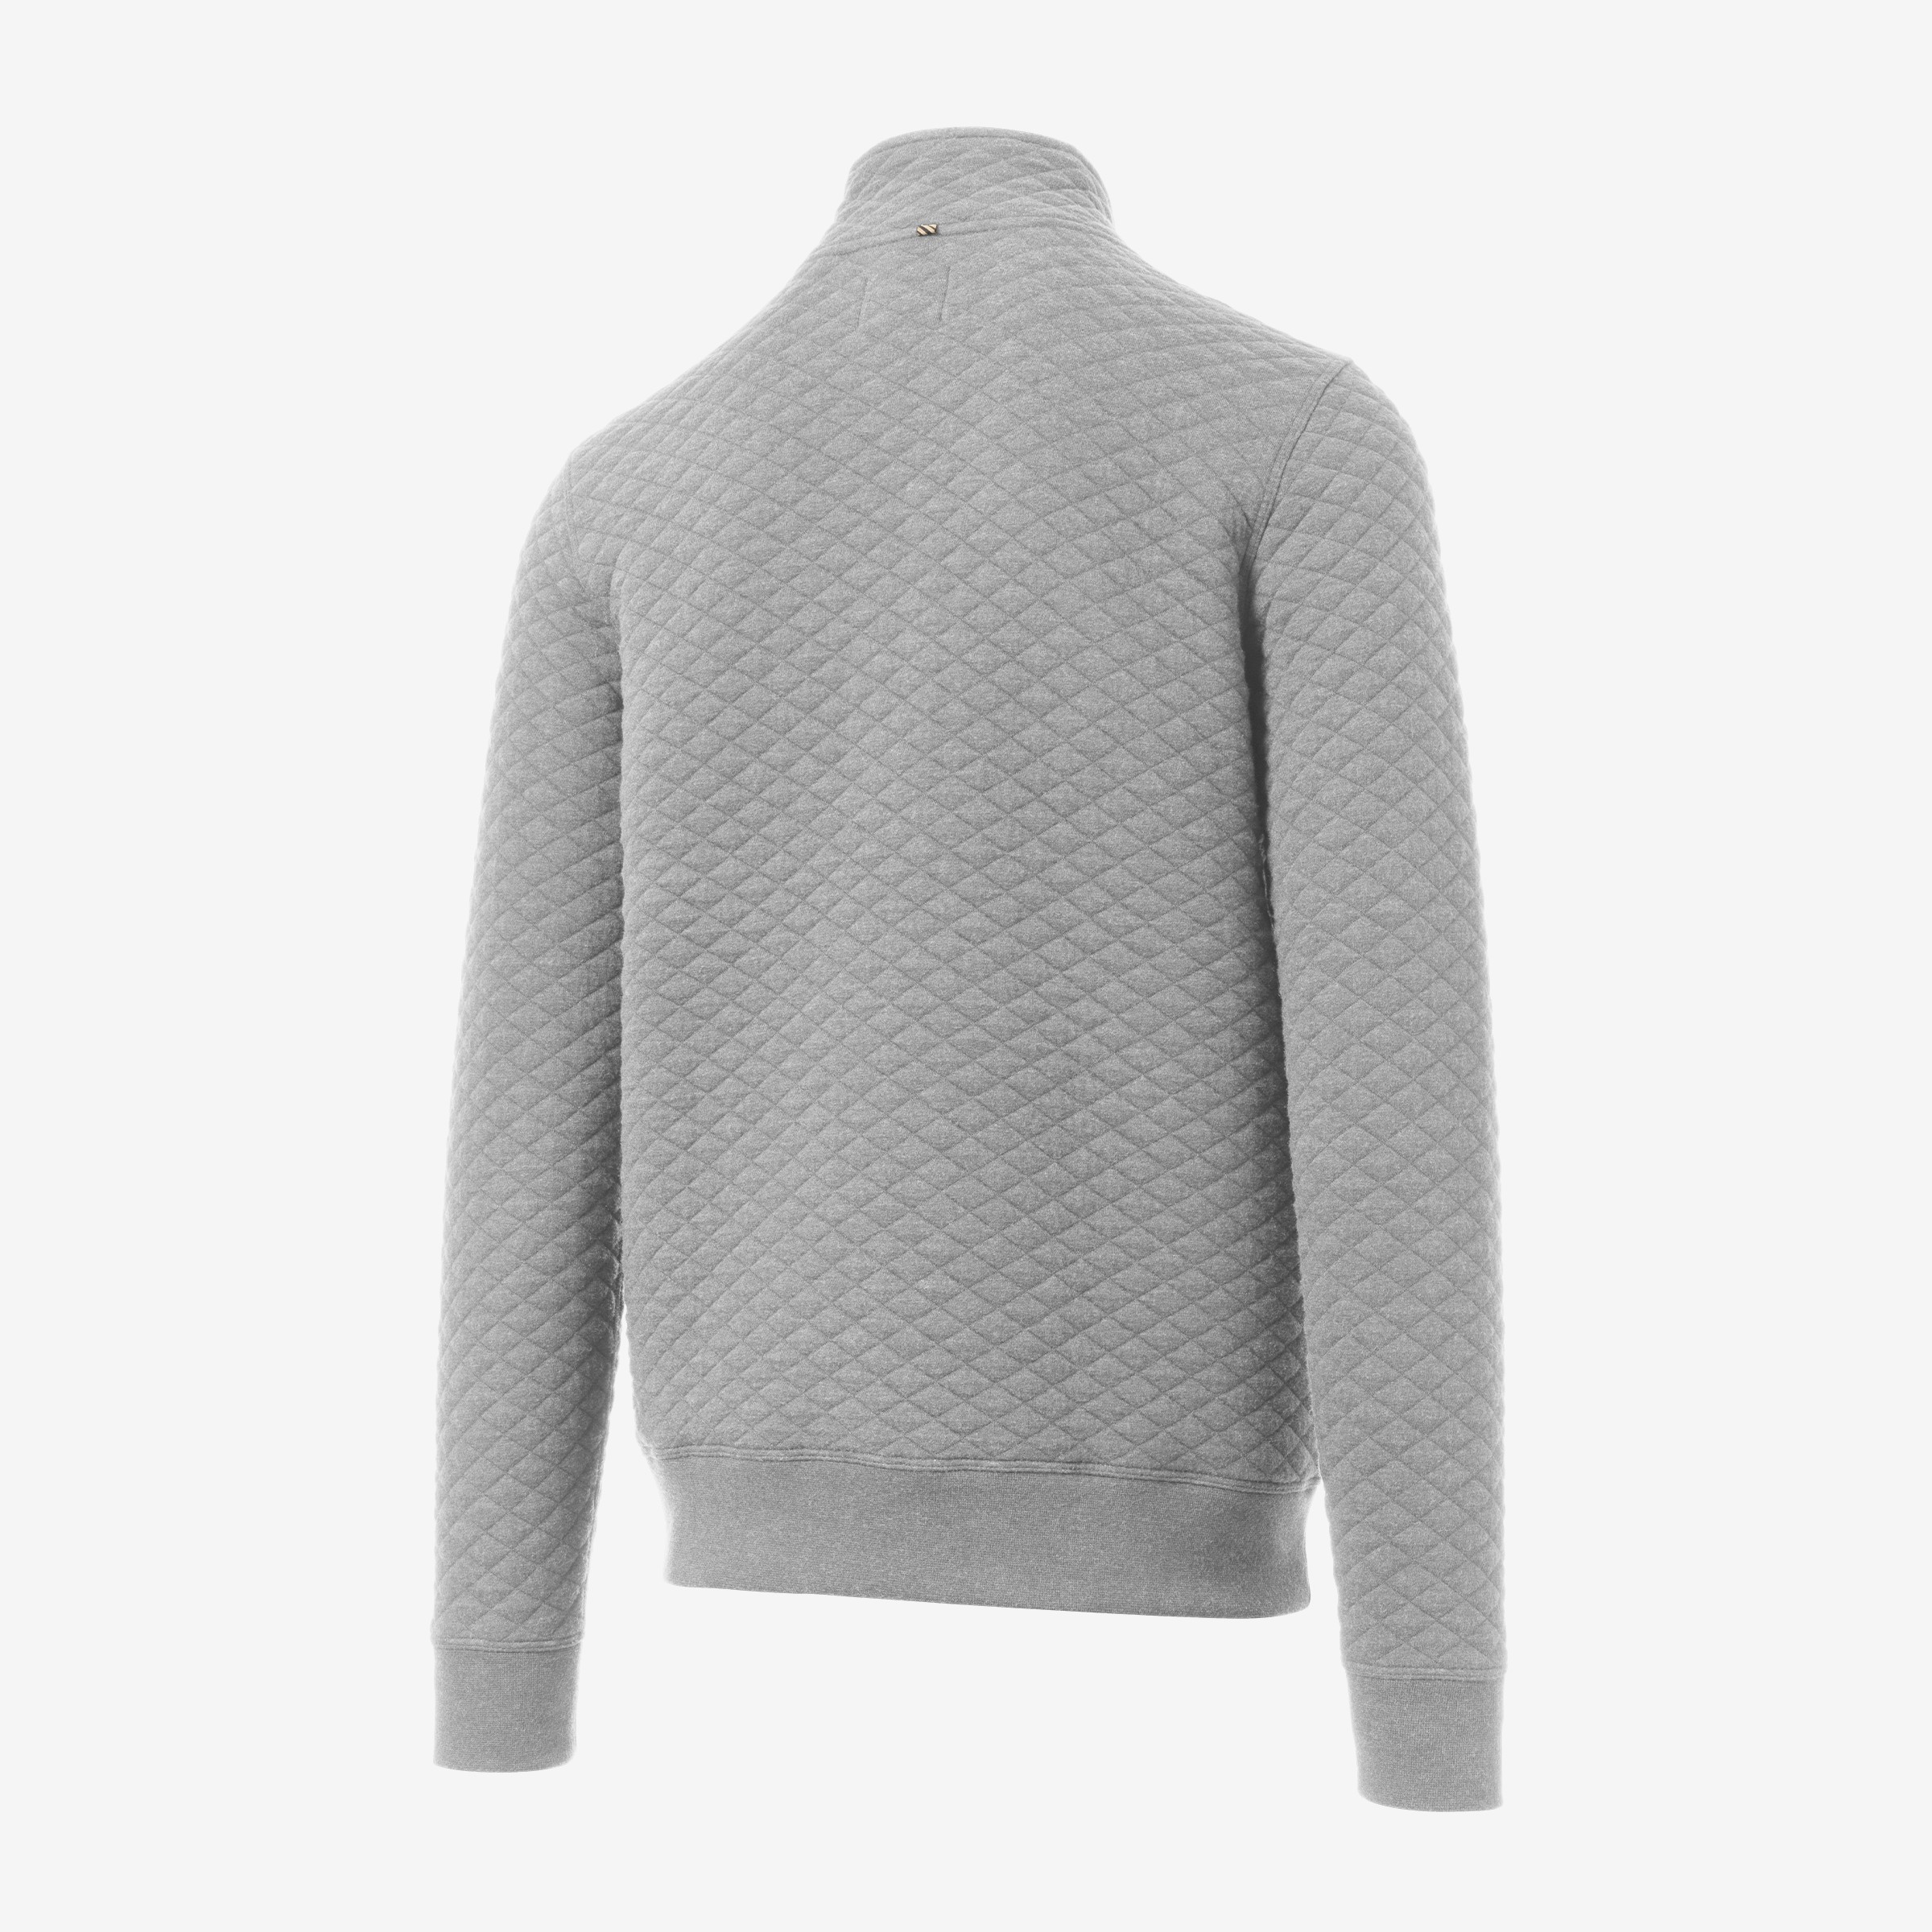 Louis Vuitton Travel Zip-Up Crew Neck Hoodie - Grey Sweatshirts